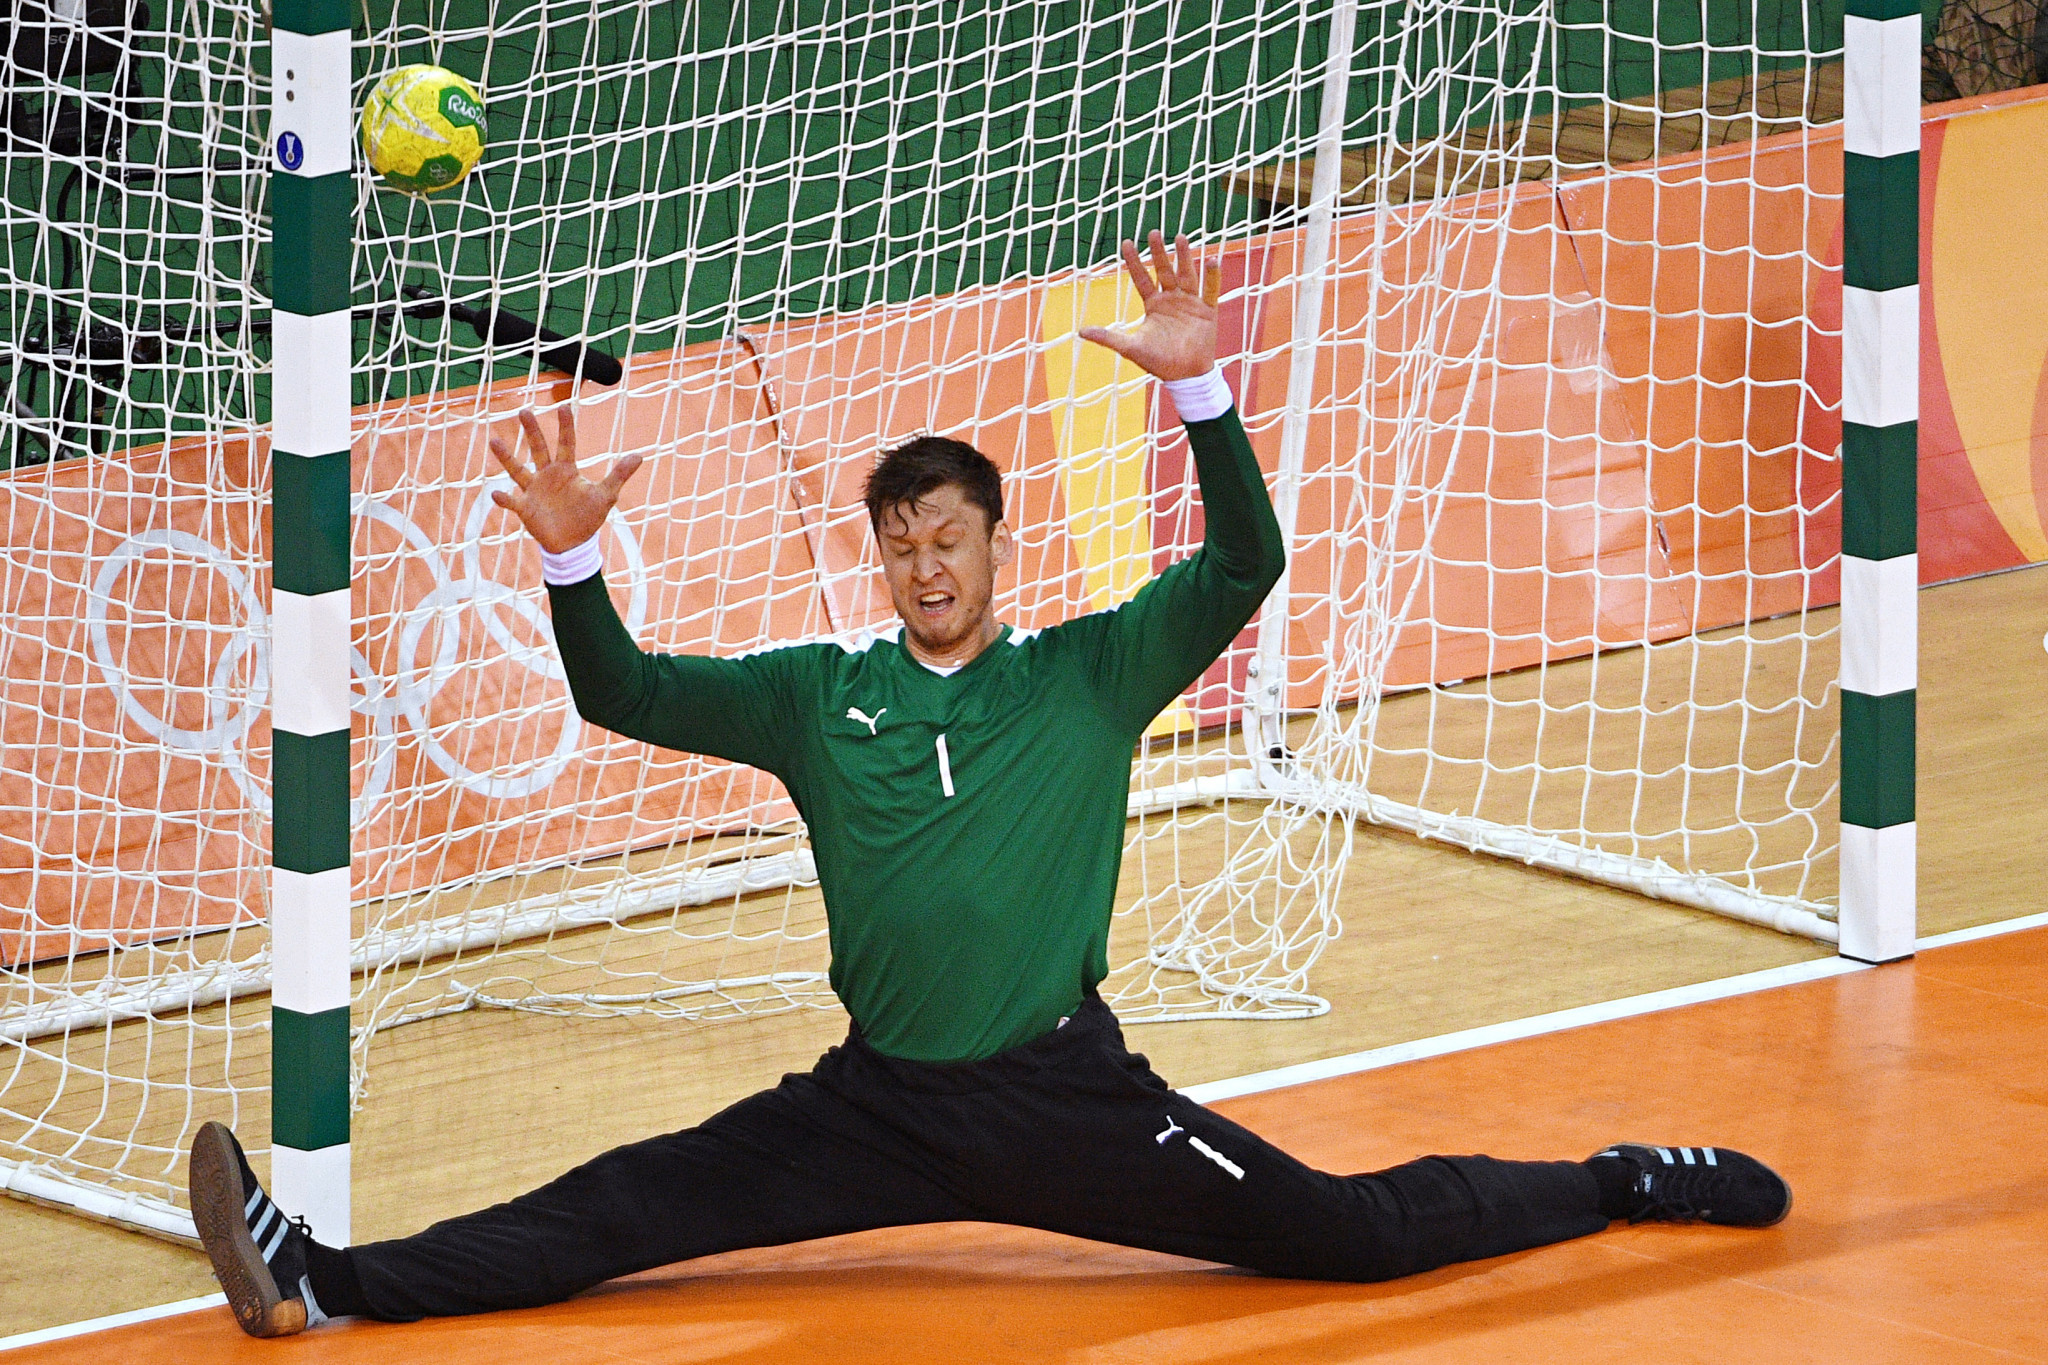 Denmark's goalkeeper Niklas Landin Jacobsen won the men's prize ©Getty Images